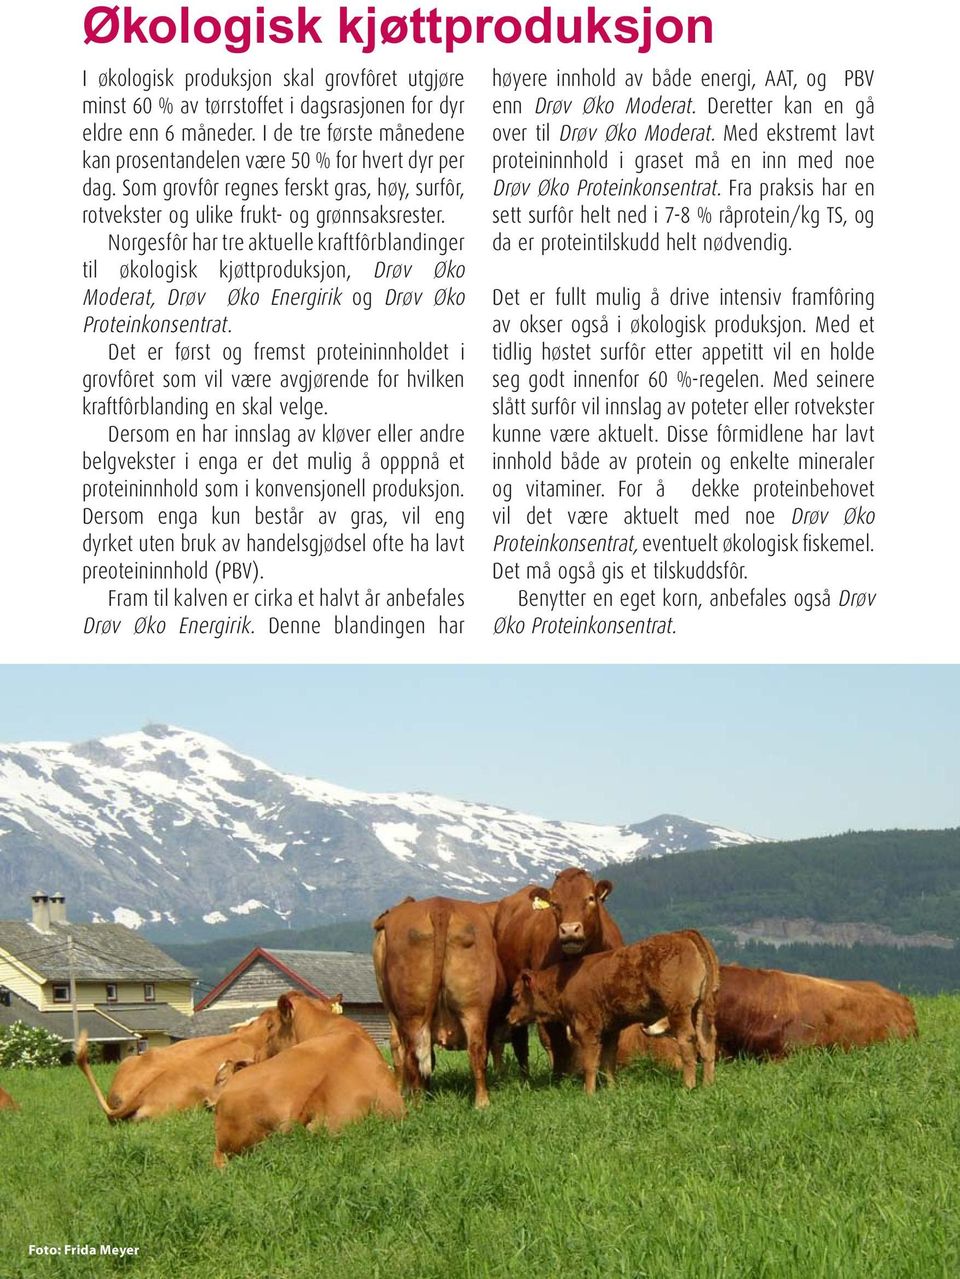 Norgesfôr har tre aktuelle kraftfôrblandinger til økologisk kjøttproduksjon, Drøv Øko Moderat, Drøv Øko Energirik og Drøv Øko Proteinkonsentrat.